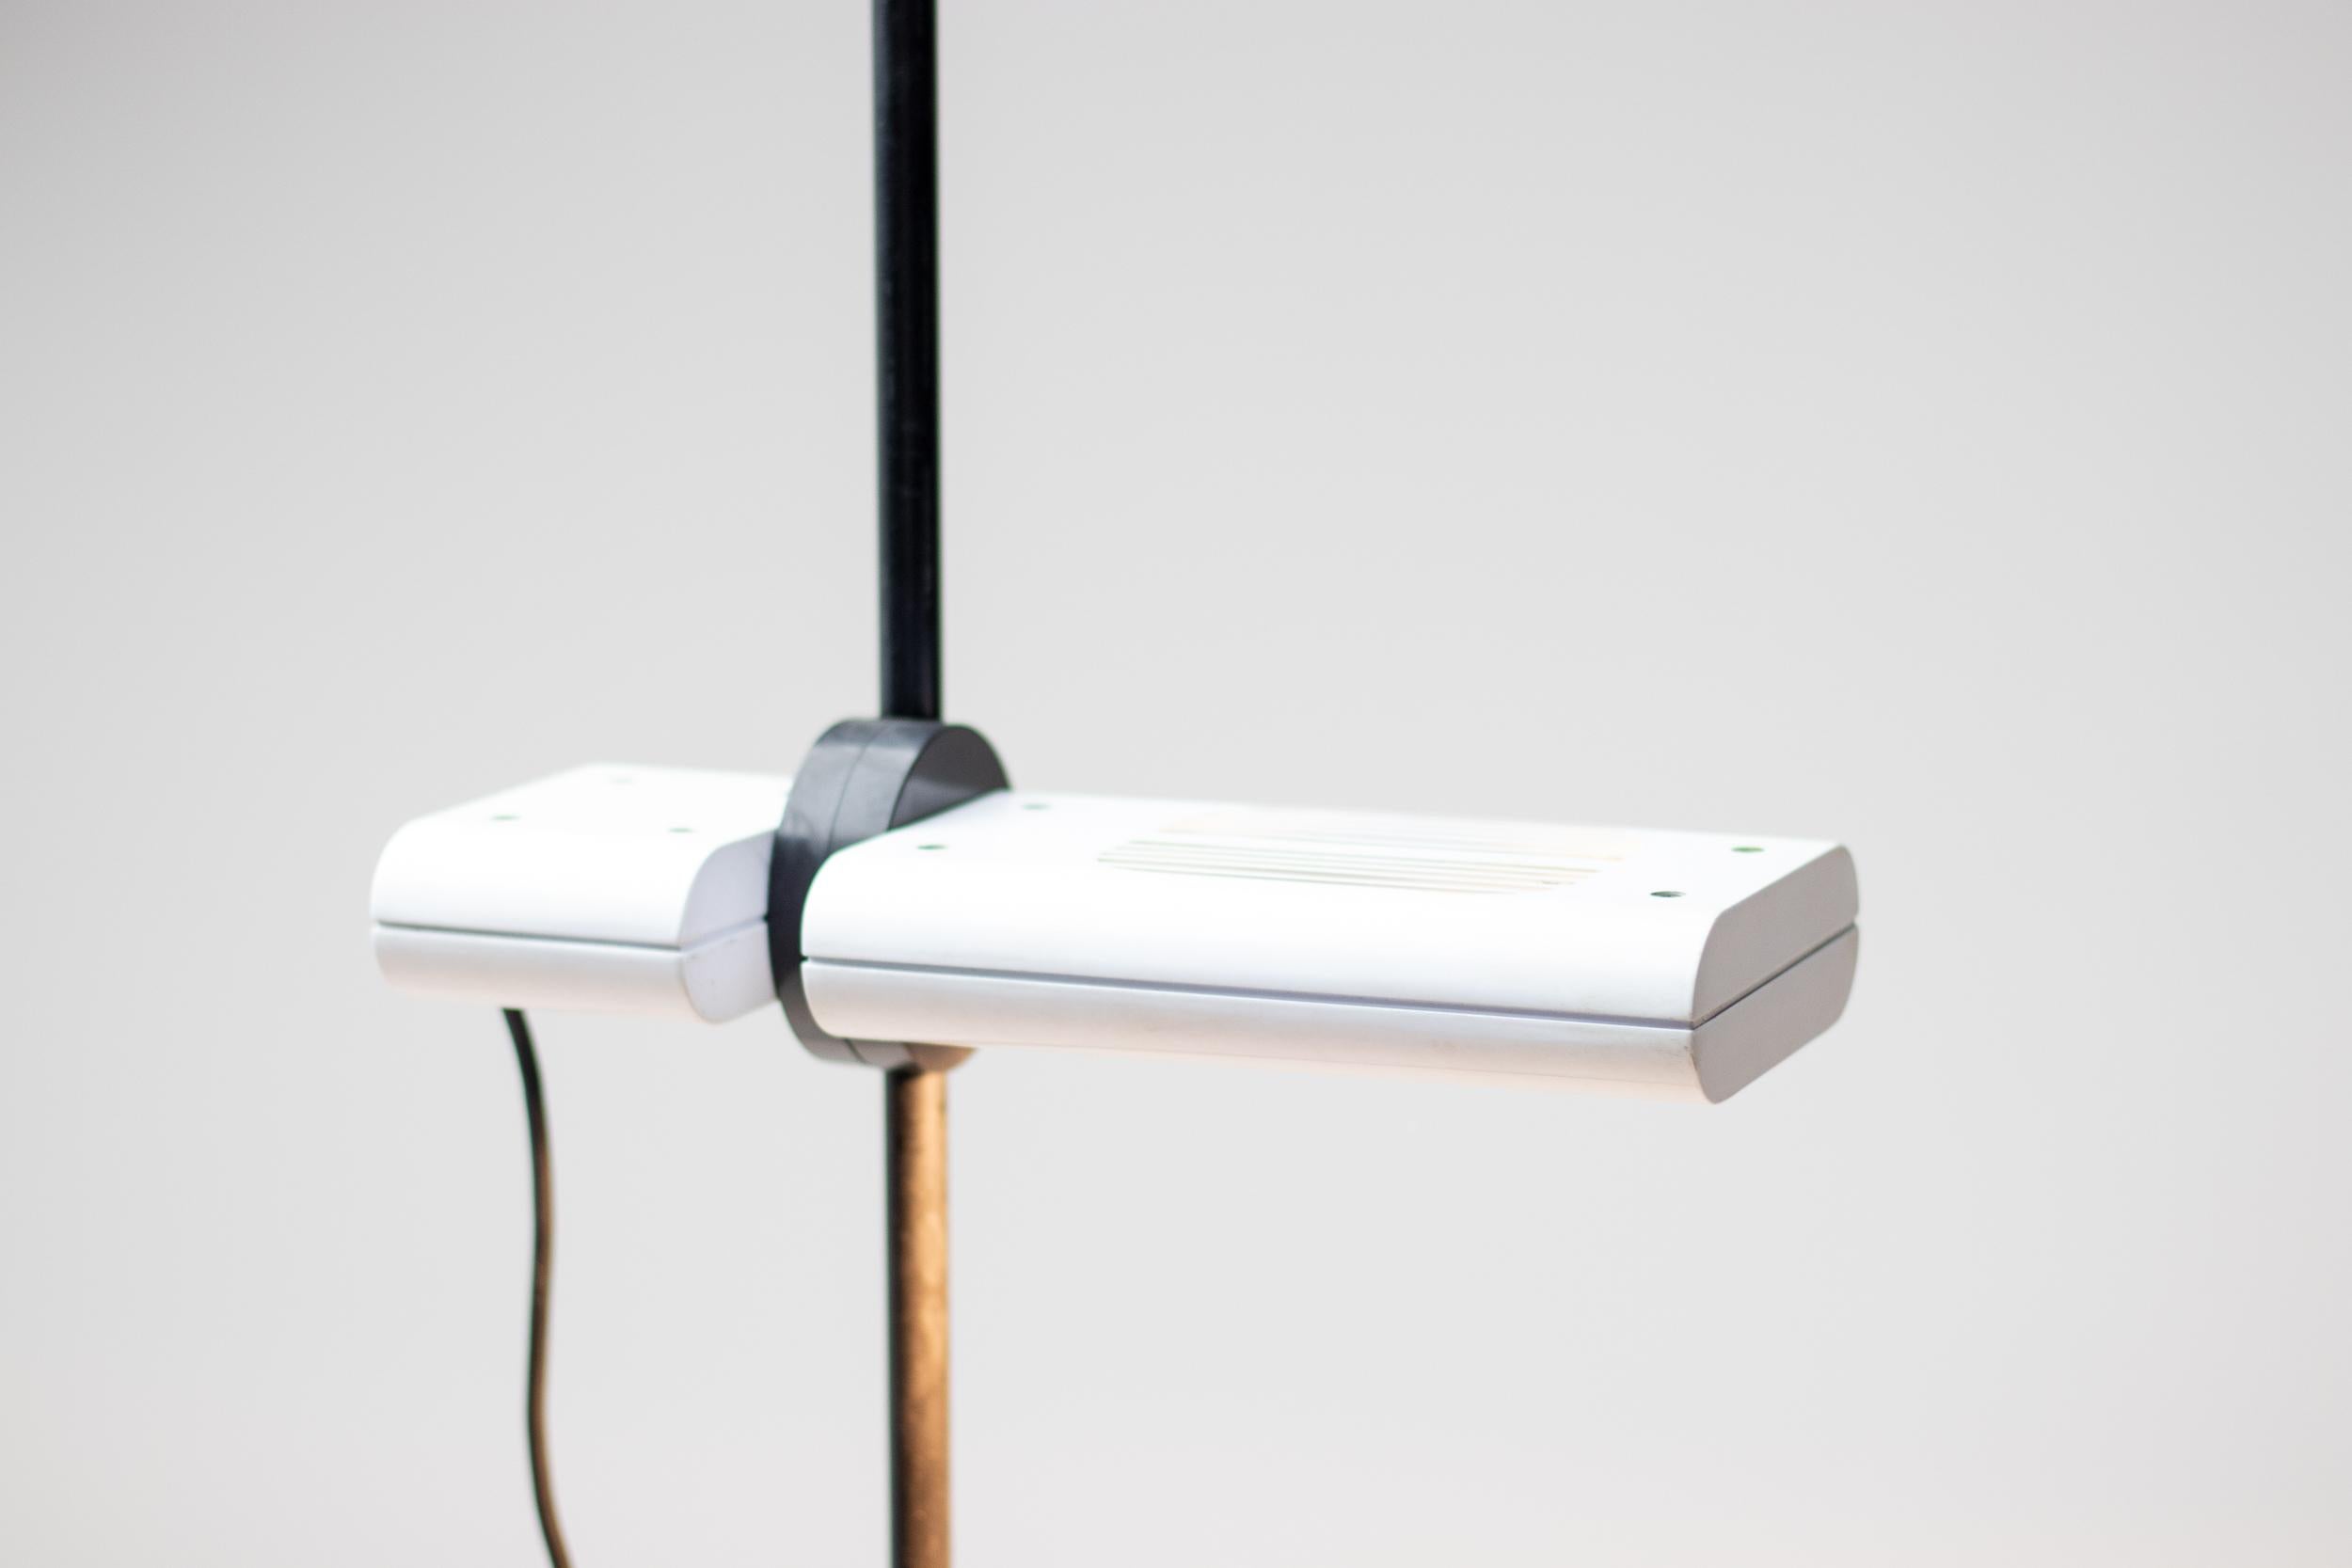 Lampadaire halogène minimaliste Aton Terra conçu par Ernesto Gismondi pour Artemide, Italie. Marqué sous la base. Actuellement en arrêt de production. Elle est dotée d'un abat-jour réglable en hauteur qui peut être utilisé comme éclairage vers le